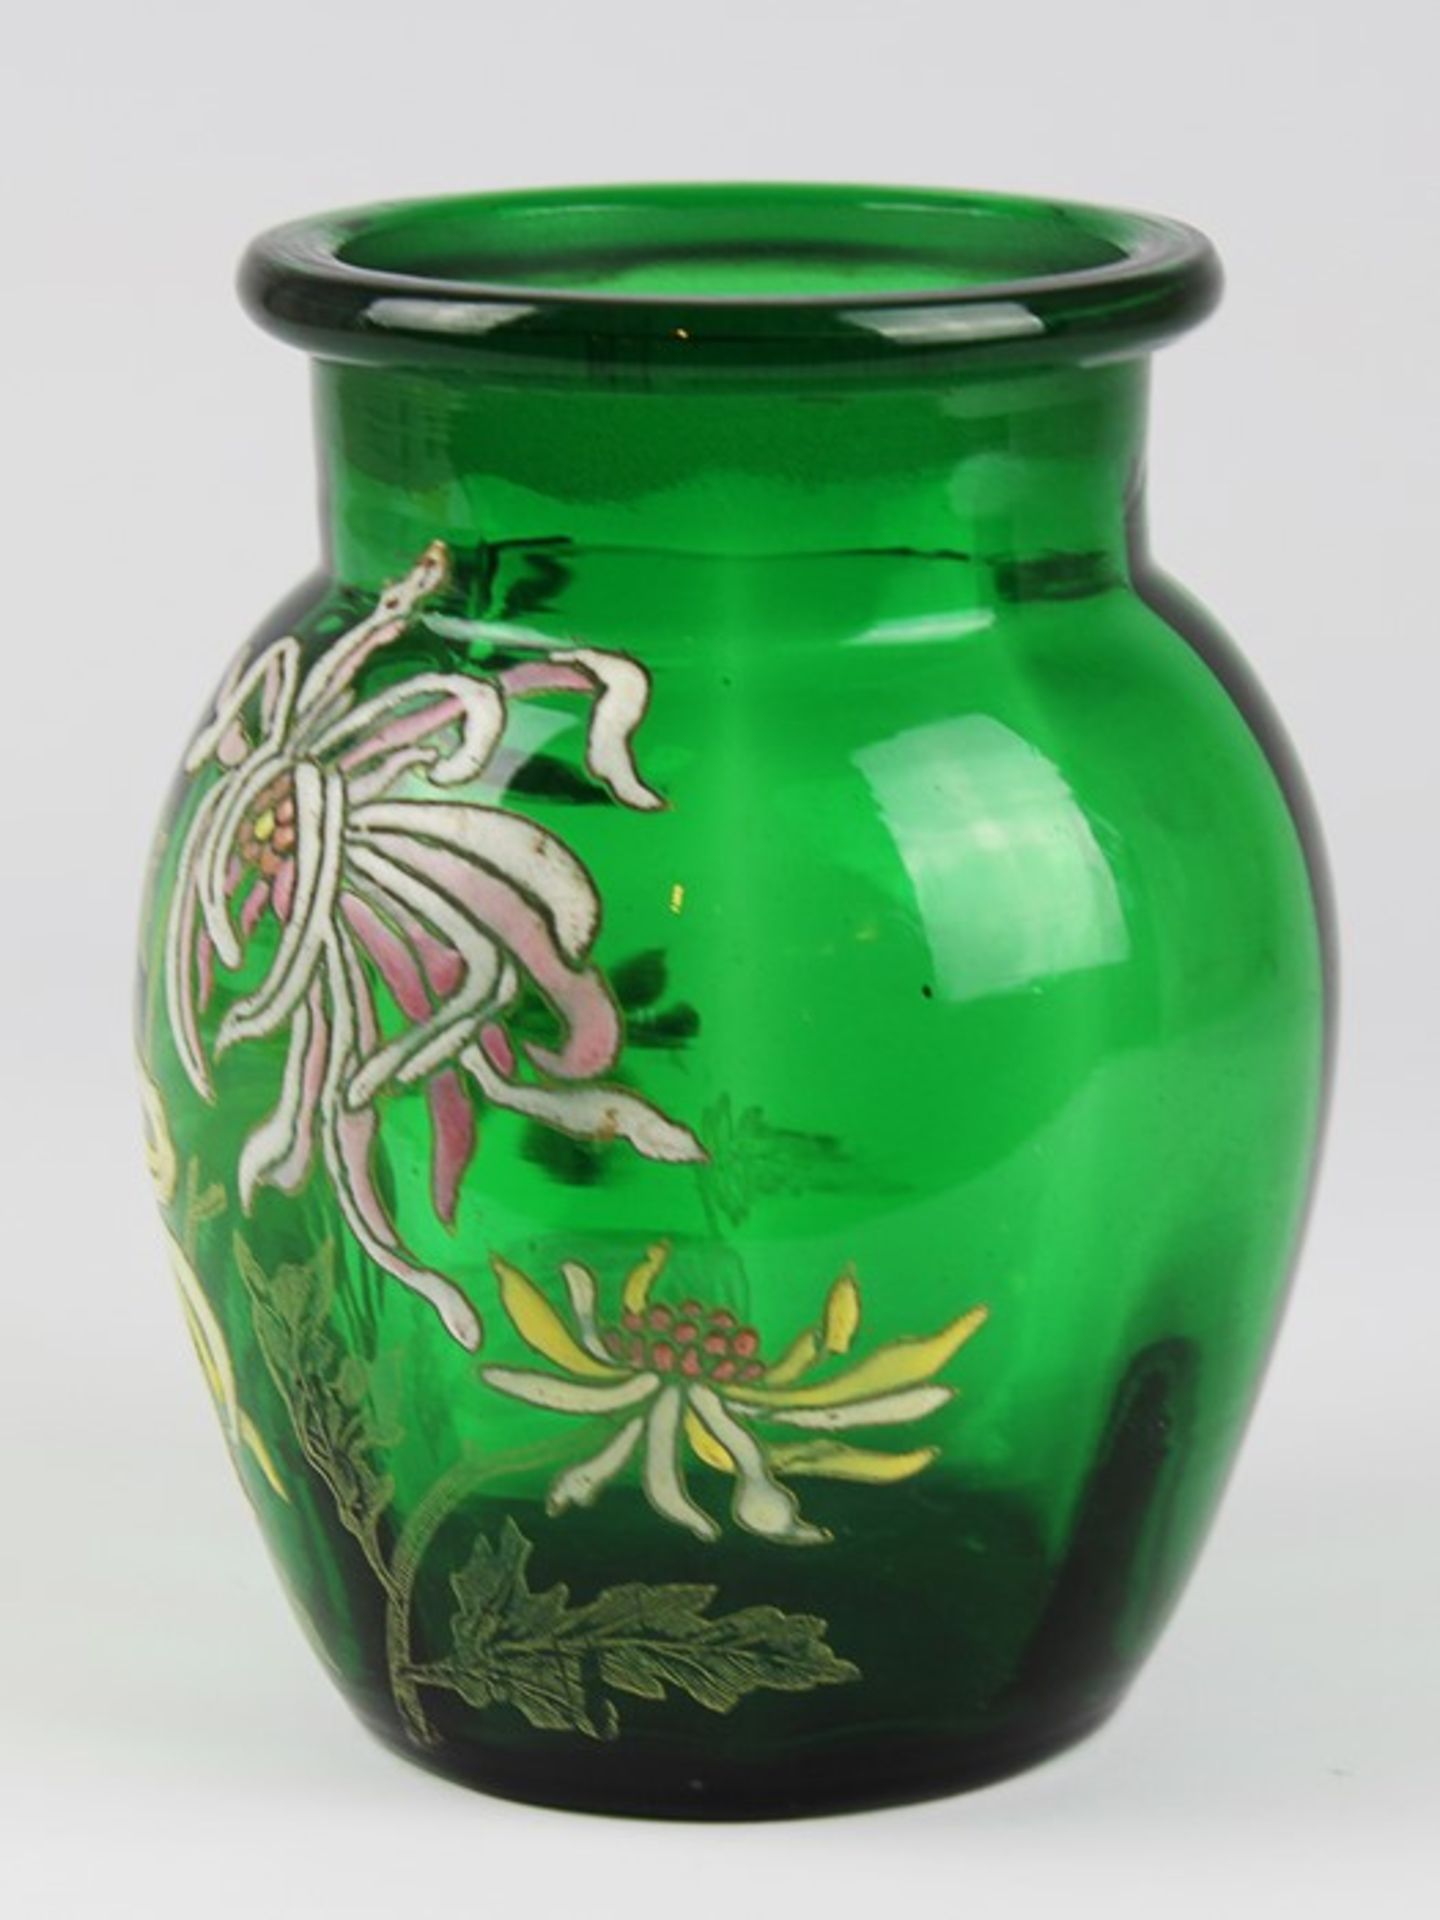 Gallé - Vase1880 - 84, Historismus, Emile Gallé, Frankreich, grünfarbenes dickw. Glas, runder Stand, - Image 2 of 5